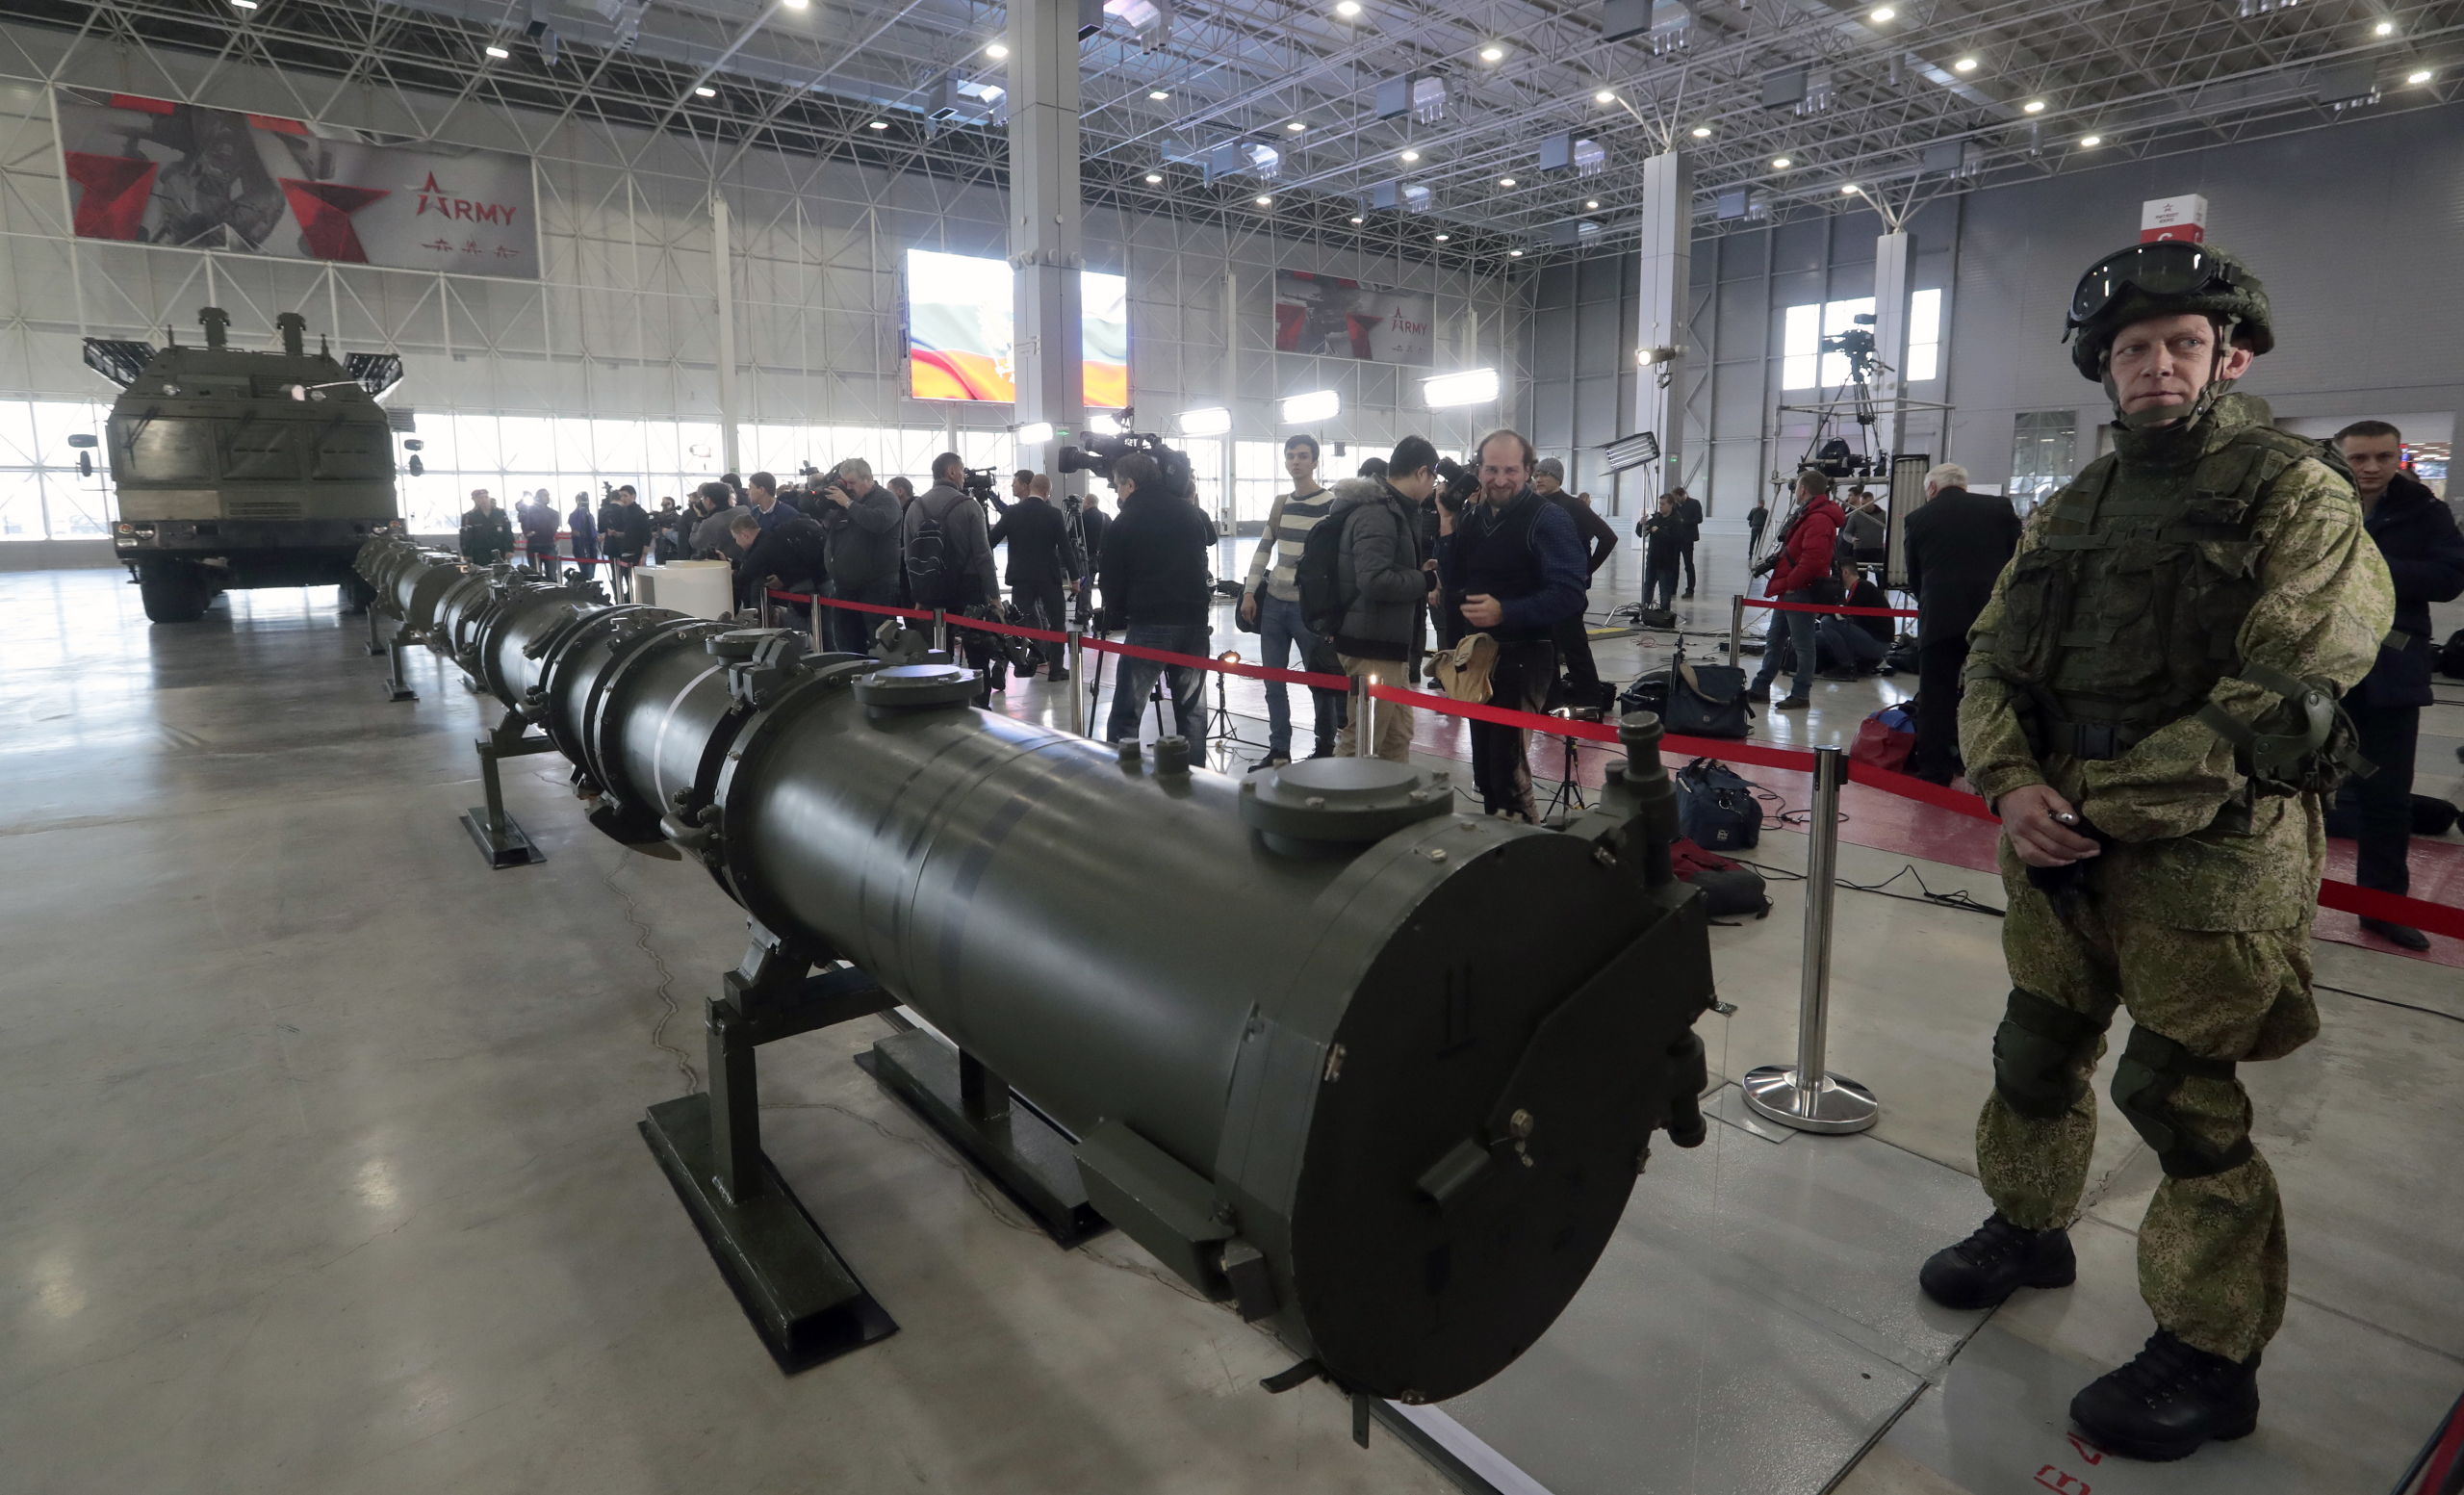 Een Russische militair houdt de wacht naast de Iskander M-raket tijdens een uitleg over raketten in een militair tentoonstellingscentrum in Moskou. Volgens de Russen zou de nieuwe raket niet ingaan tegen het INF-wapenverdrag. Dat heeft de Amerikaanse president Trump opgezegd.